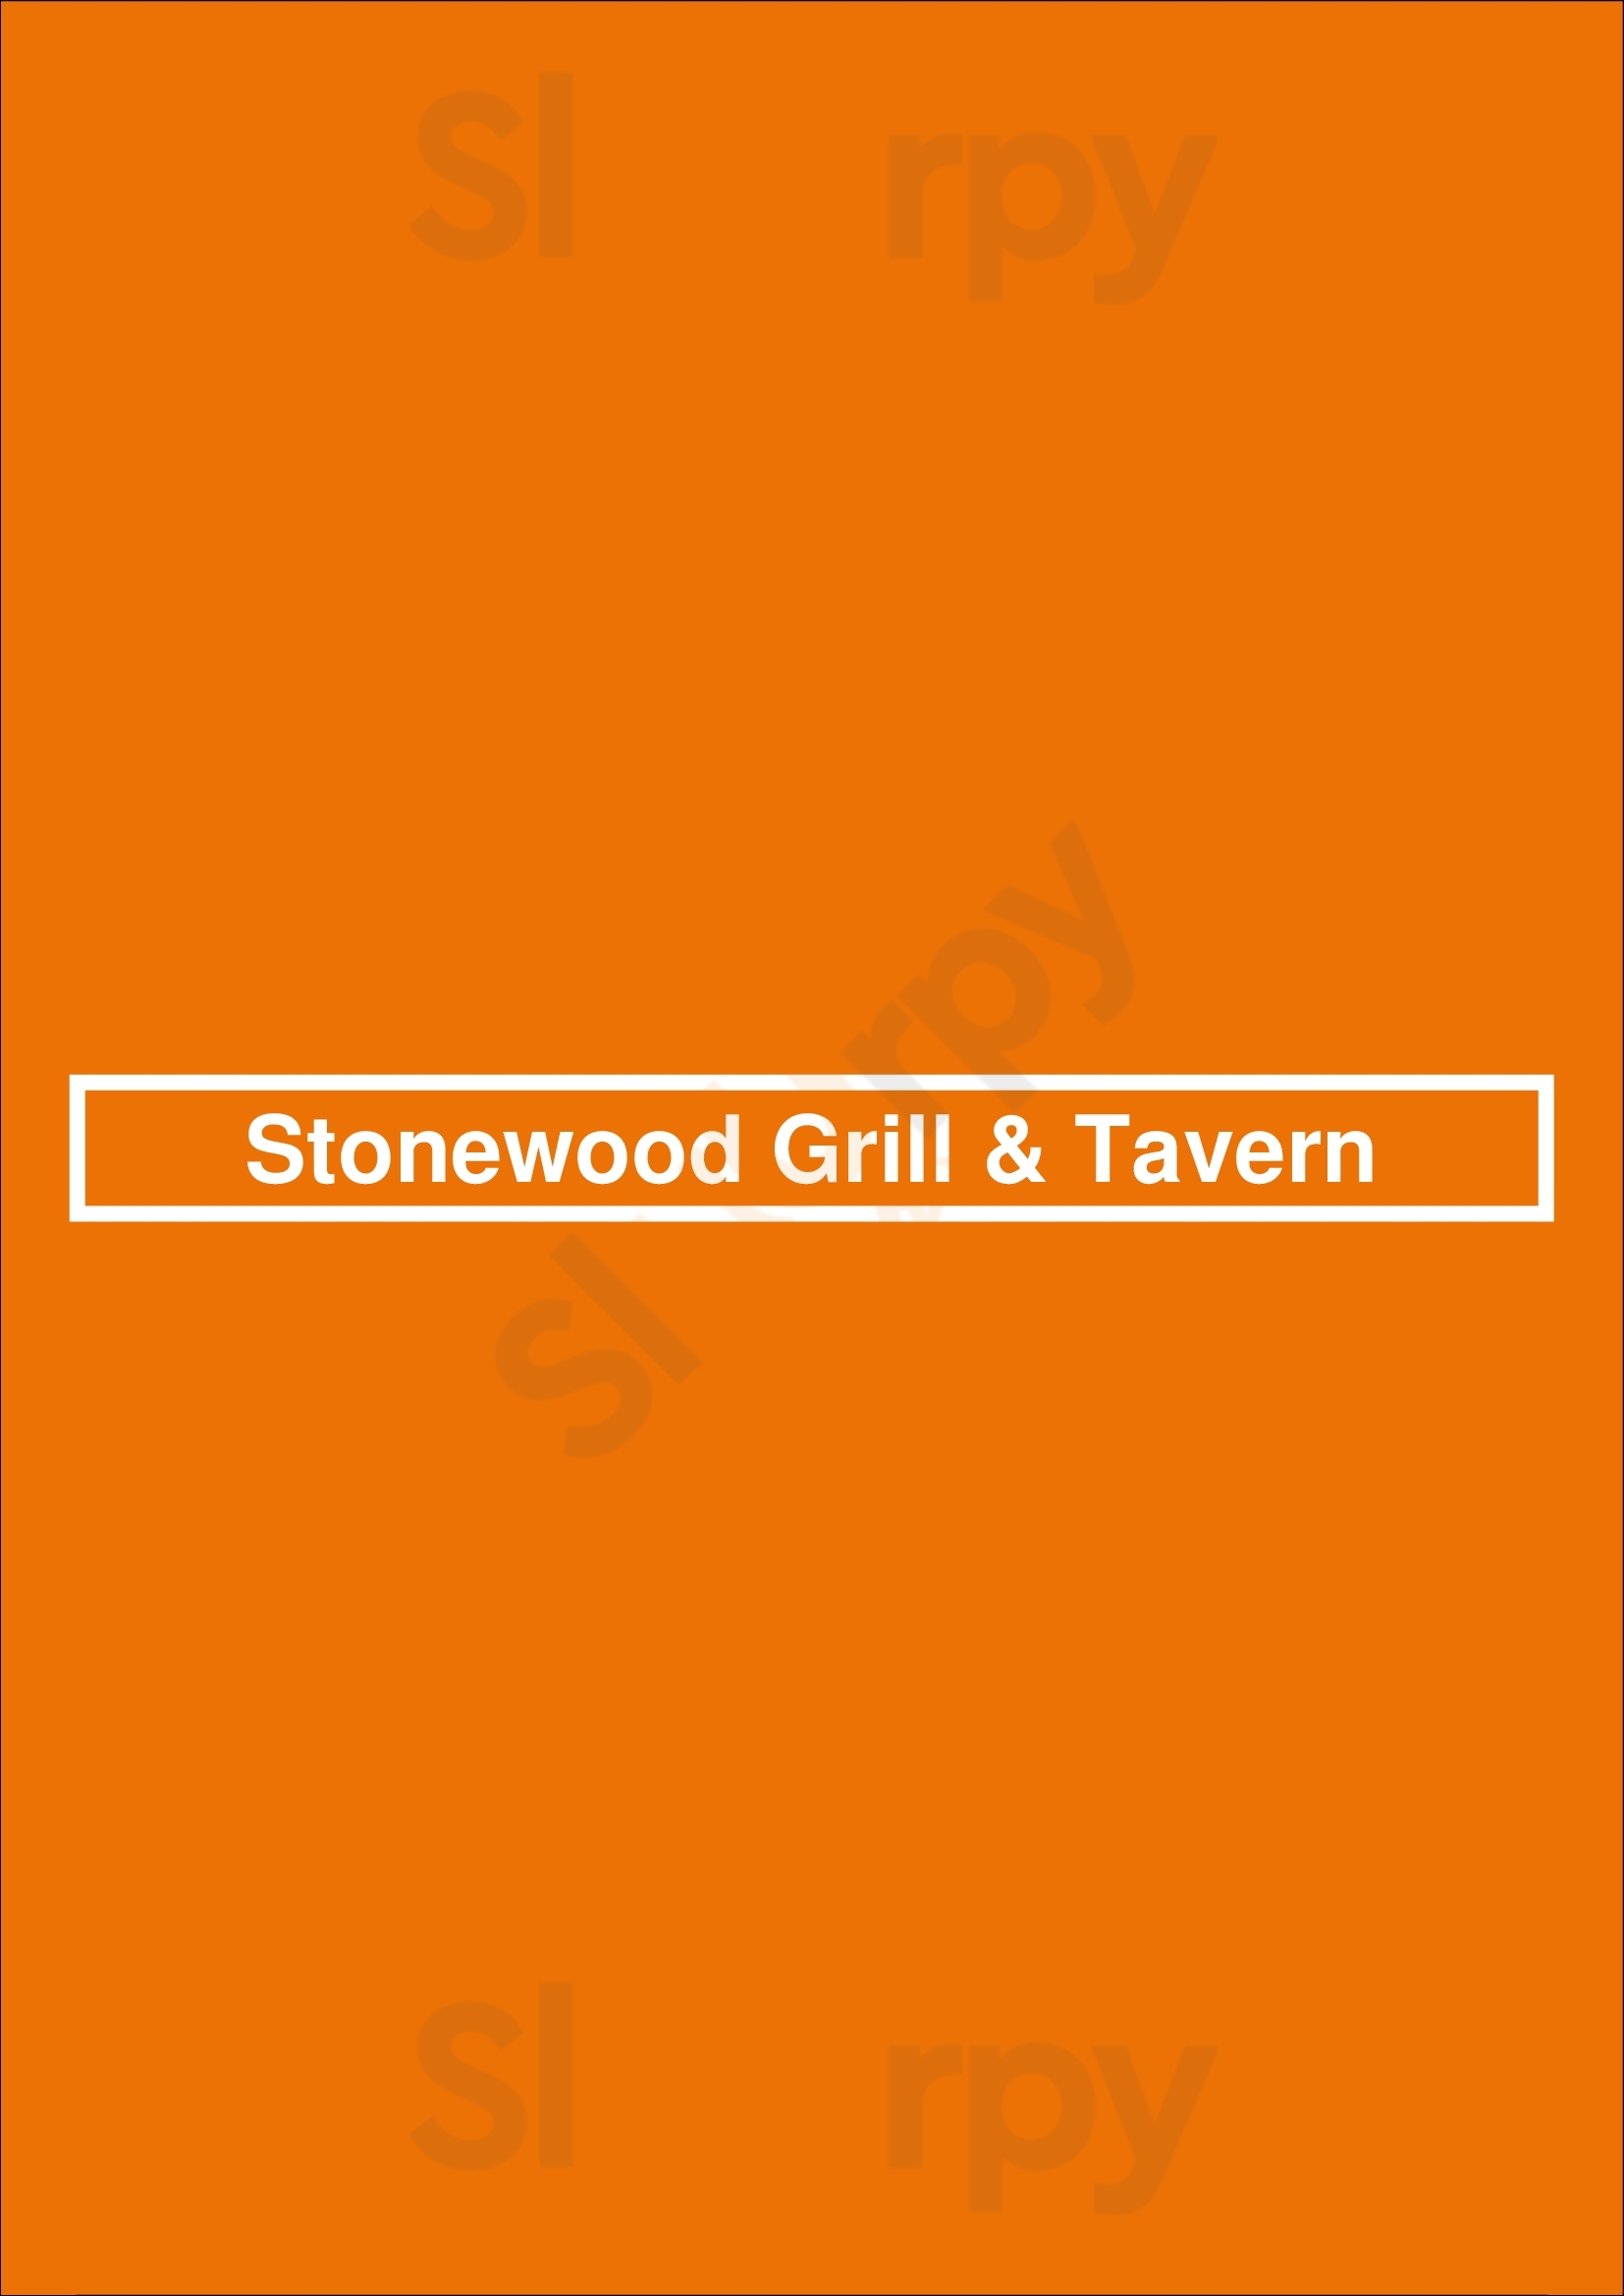 Stonewood Grill & Tavern Brandon Menu - 1